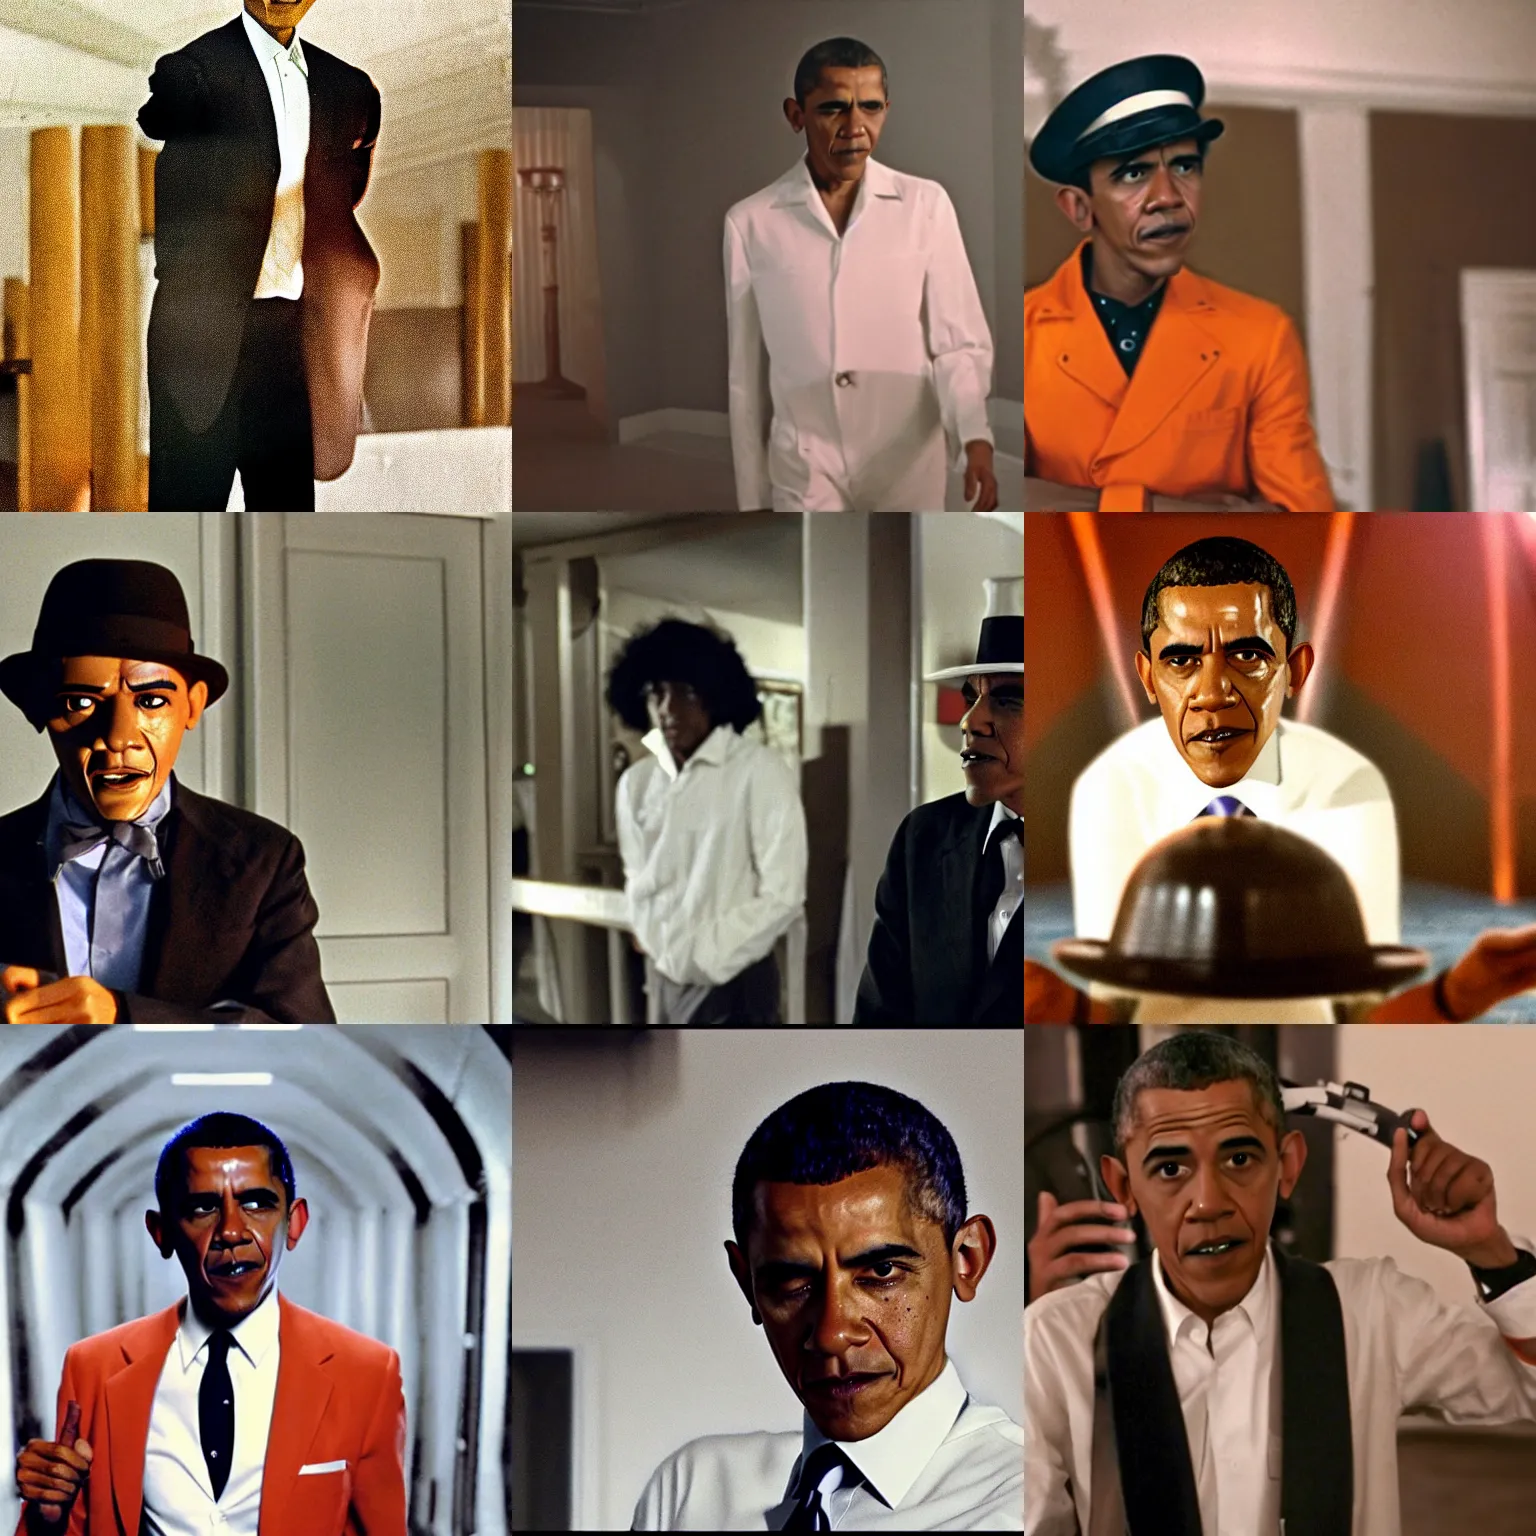 Prompt: Movie still of Barack Obama in A Clockwork Orange